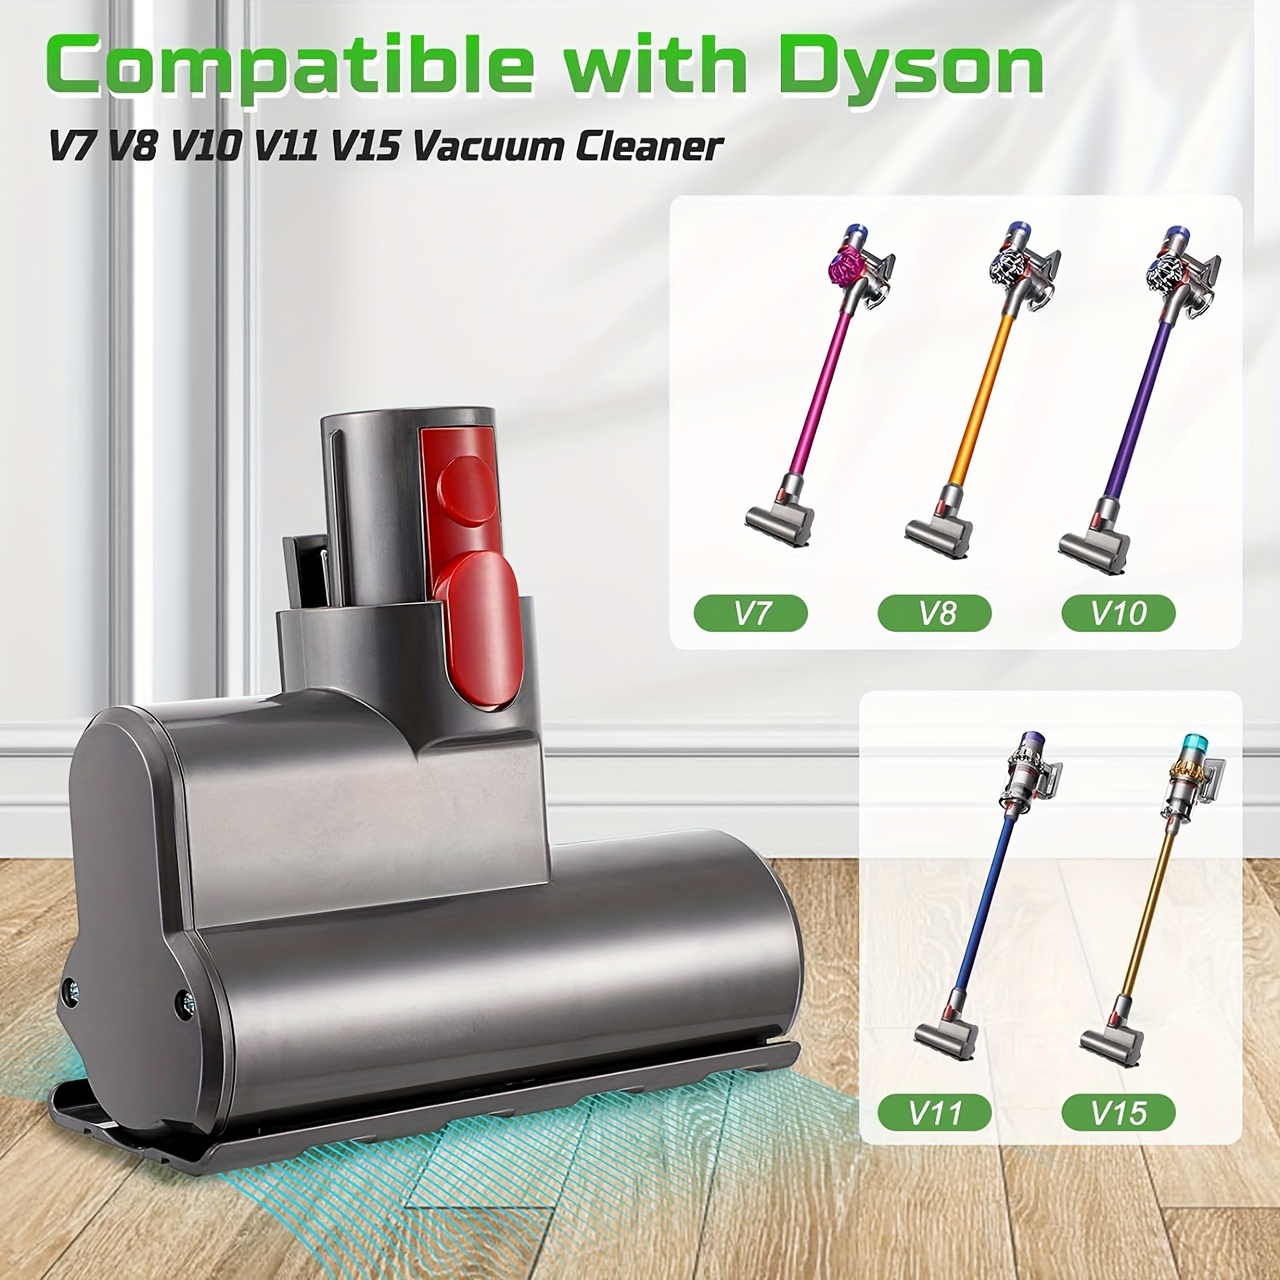 For Dyson V7 V8 V10 V11 V15 Vacuum Cleaner Mopping Attachment